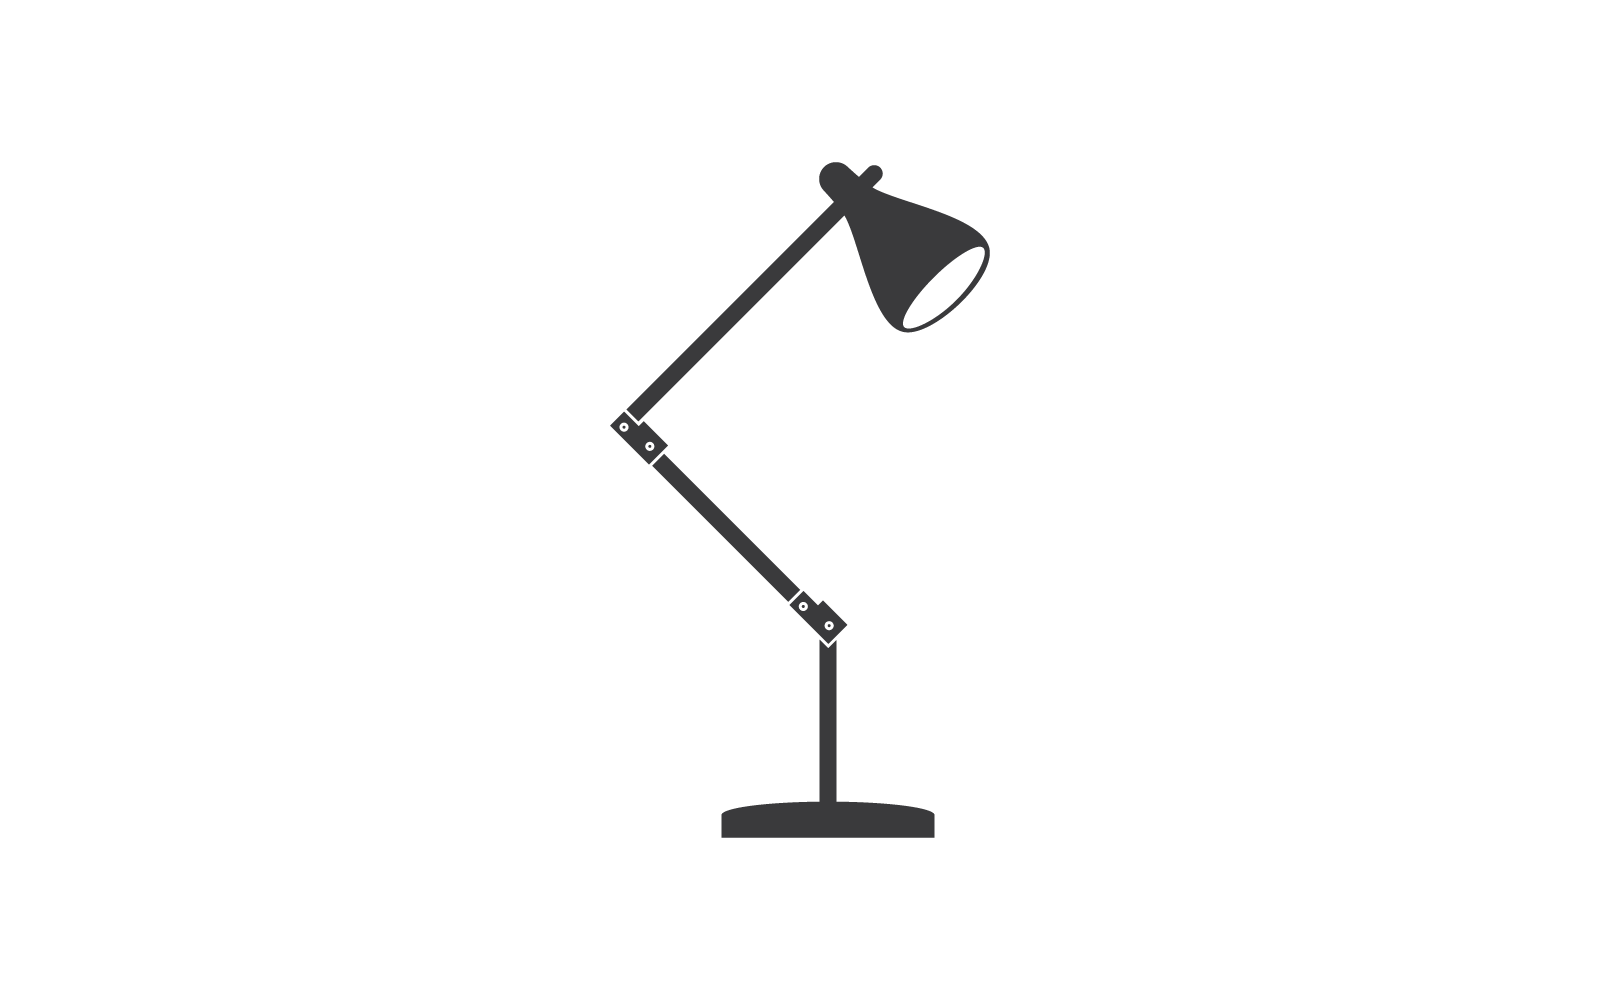 Schreibtischlampen-Symbol, Vektor, flaches Design